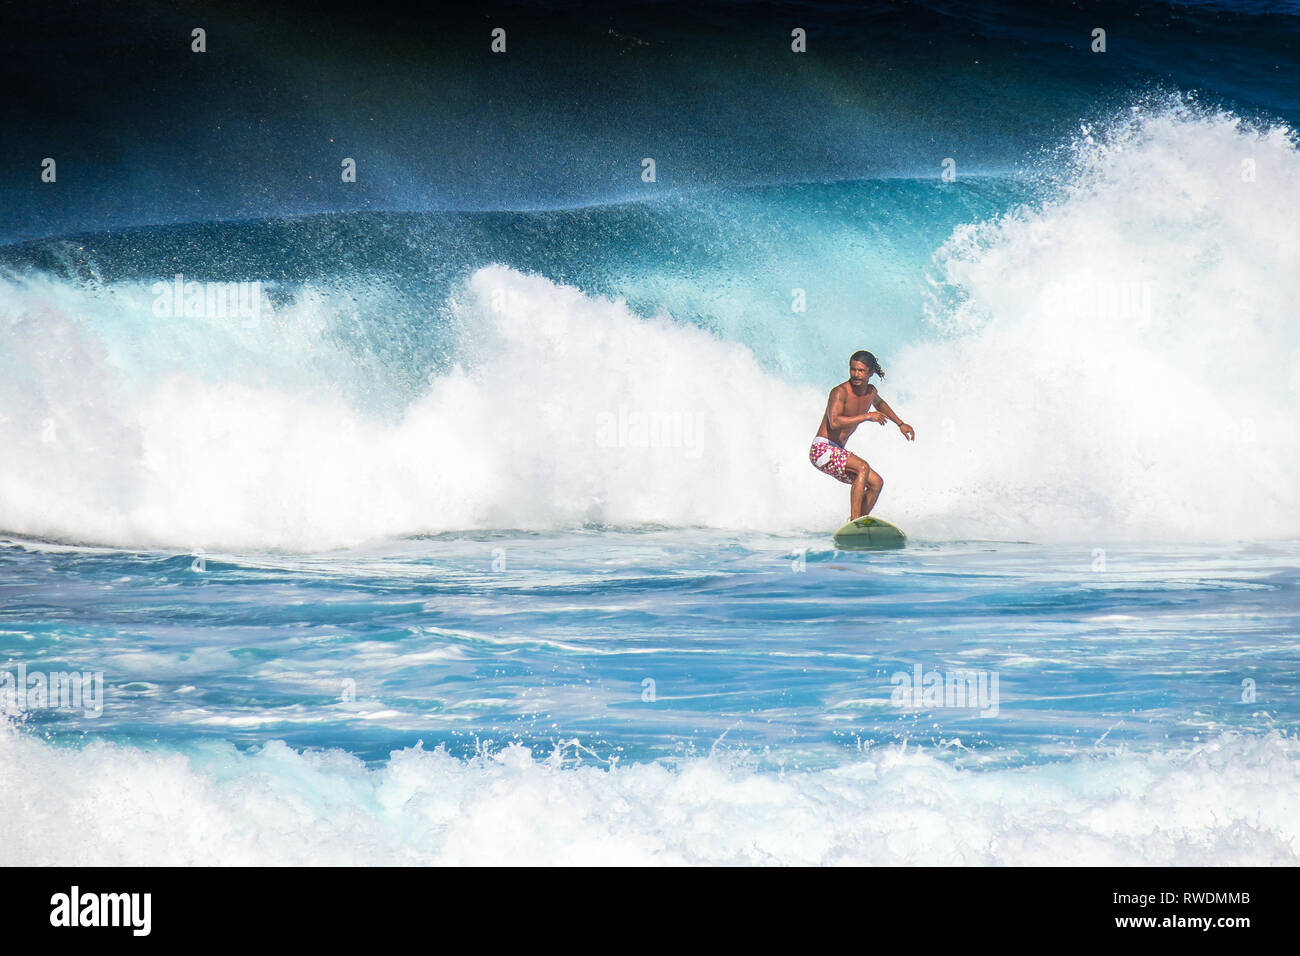 Surfer Mann Surfen große Welle auf Wolke 9 - Siargao, Philippinen Stockfoto